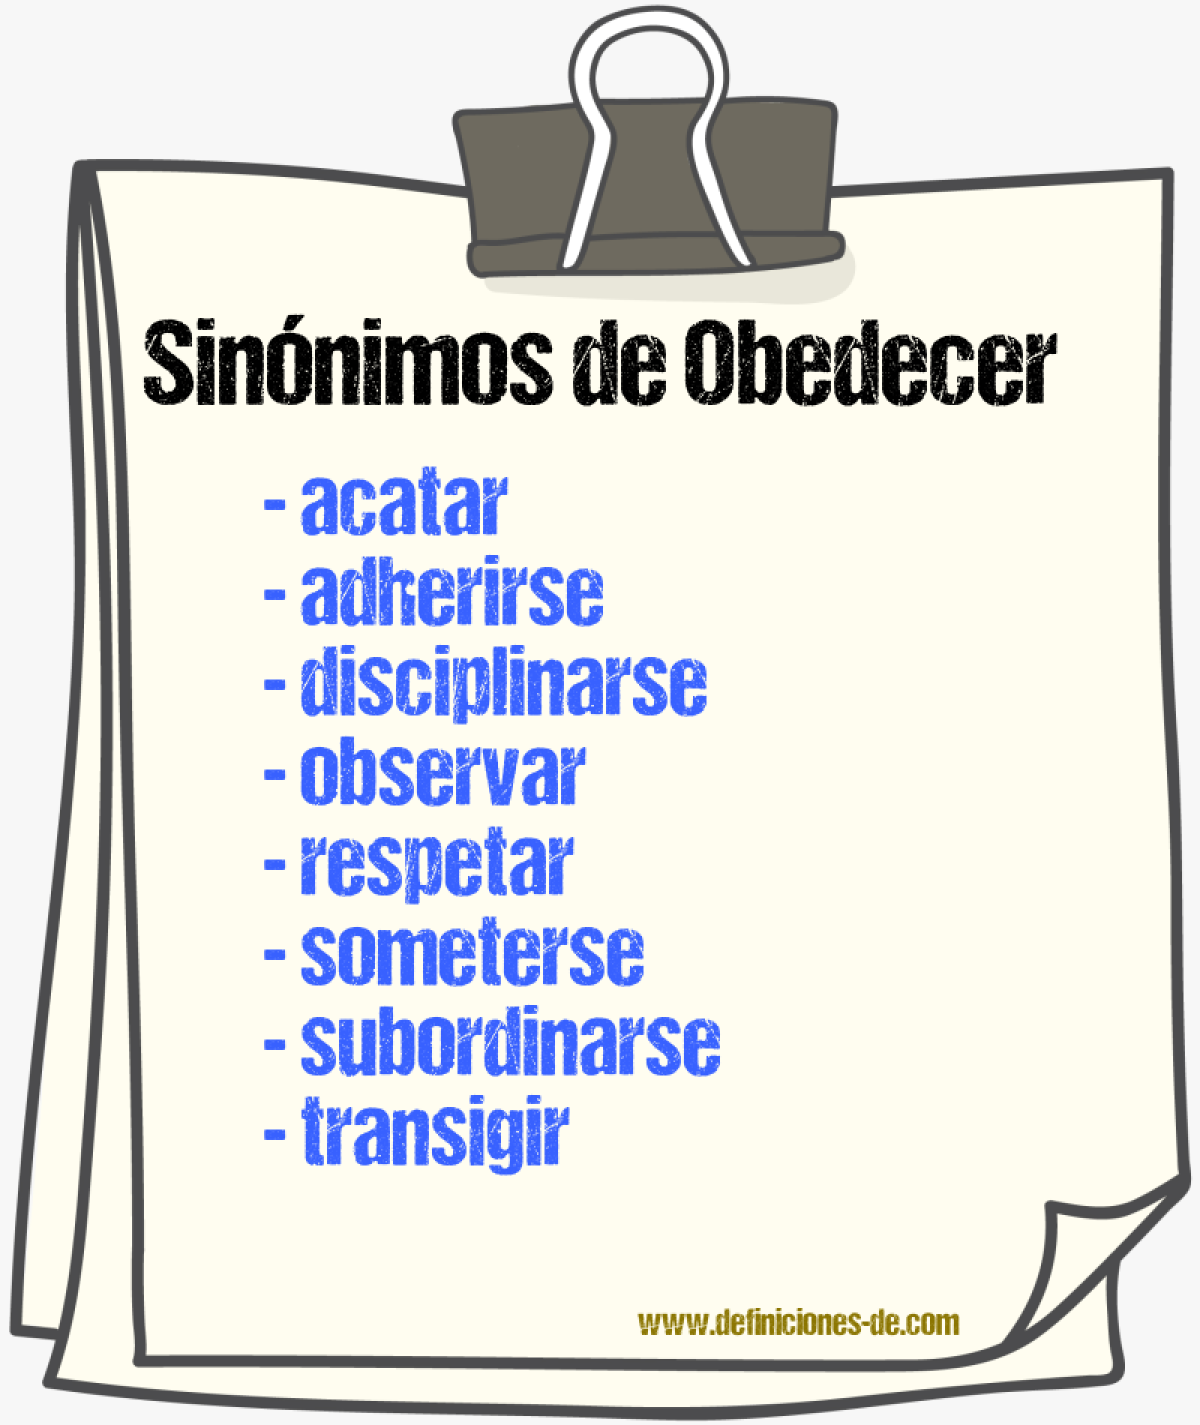 Sinónimos de obedecer